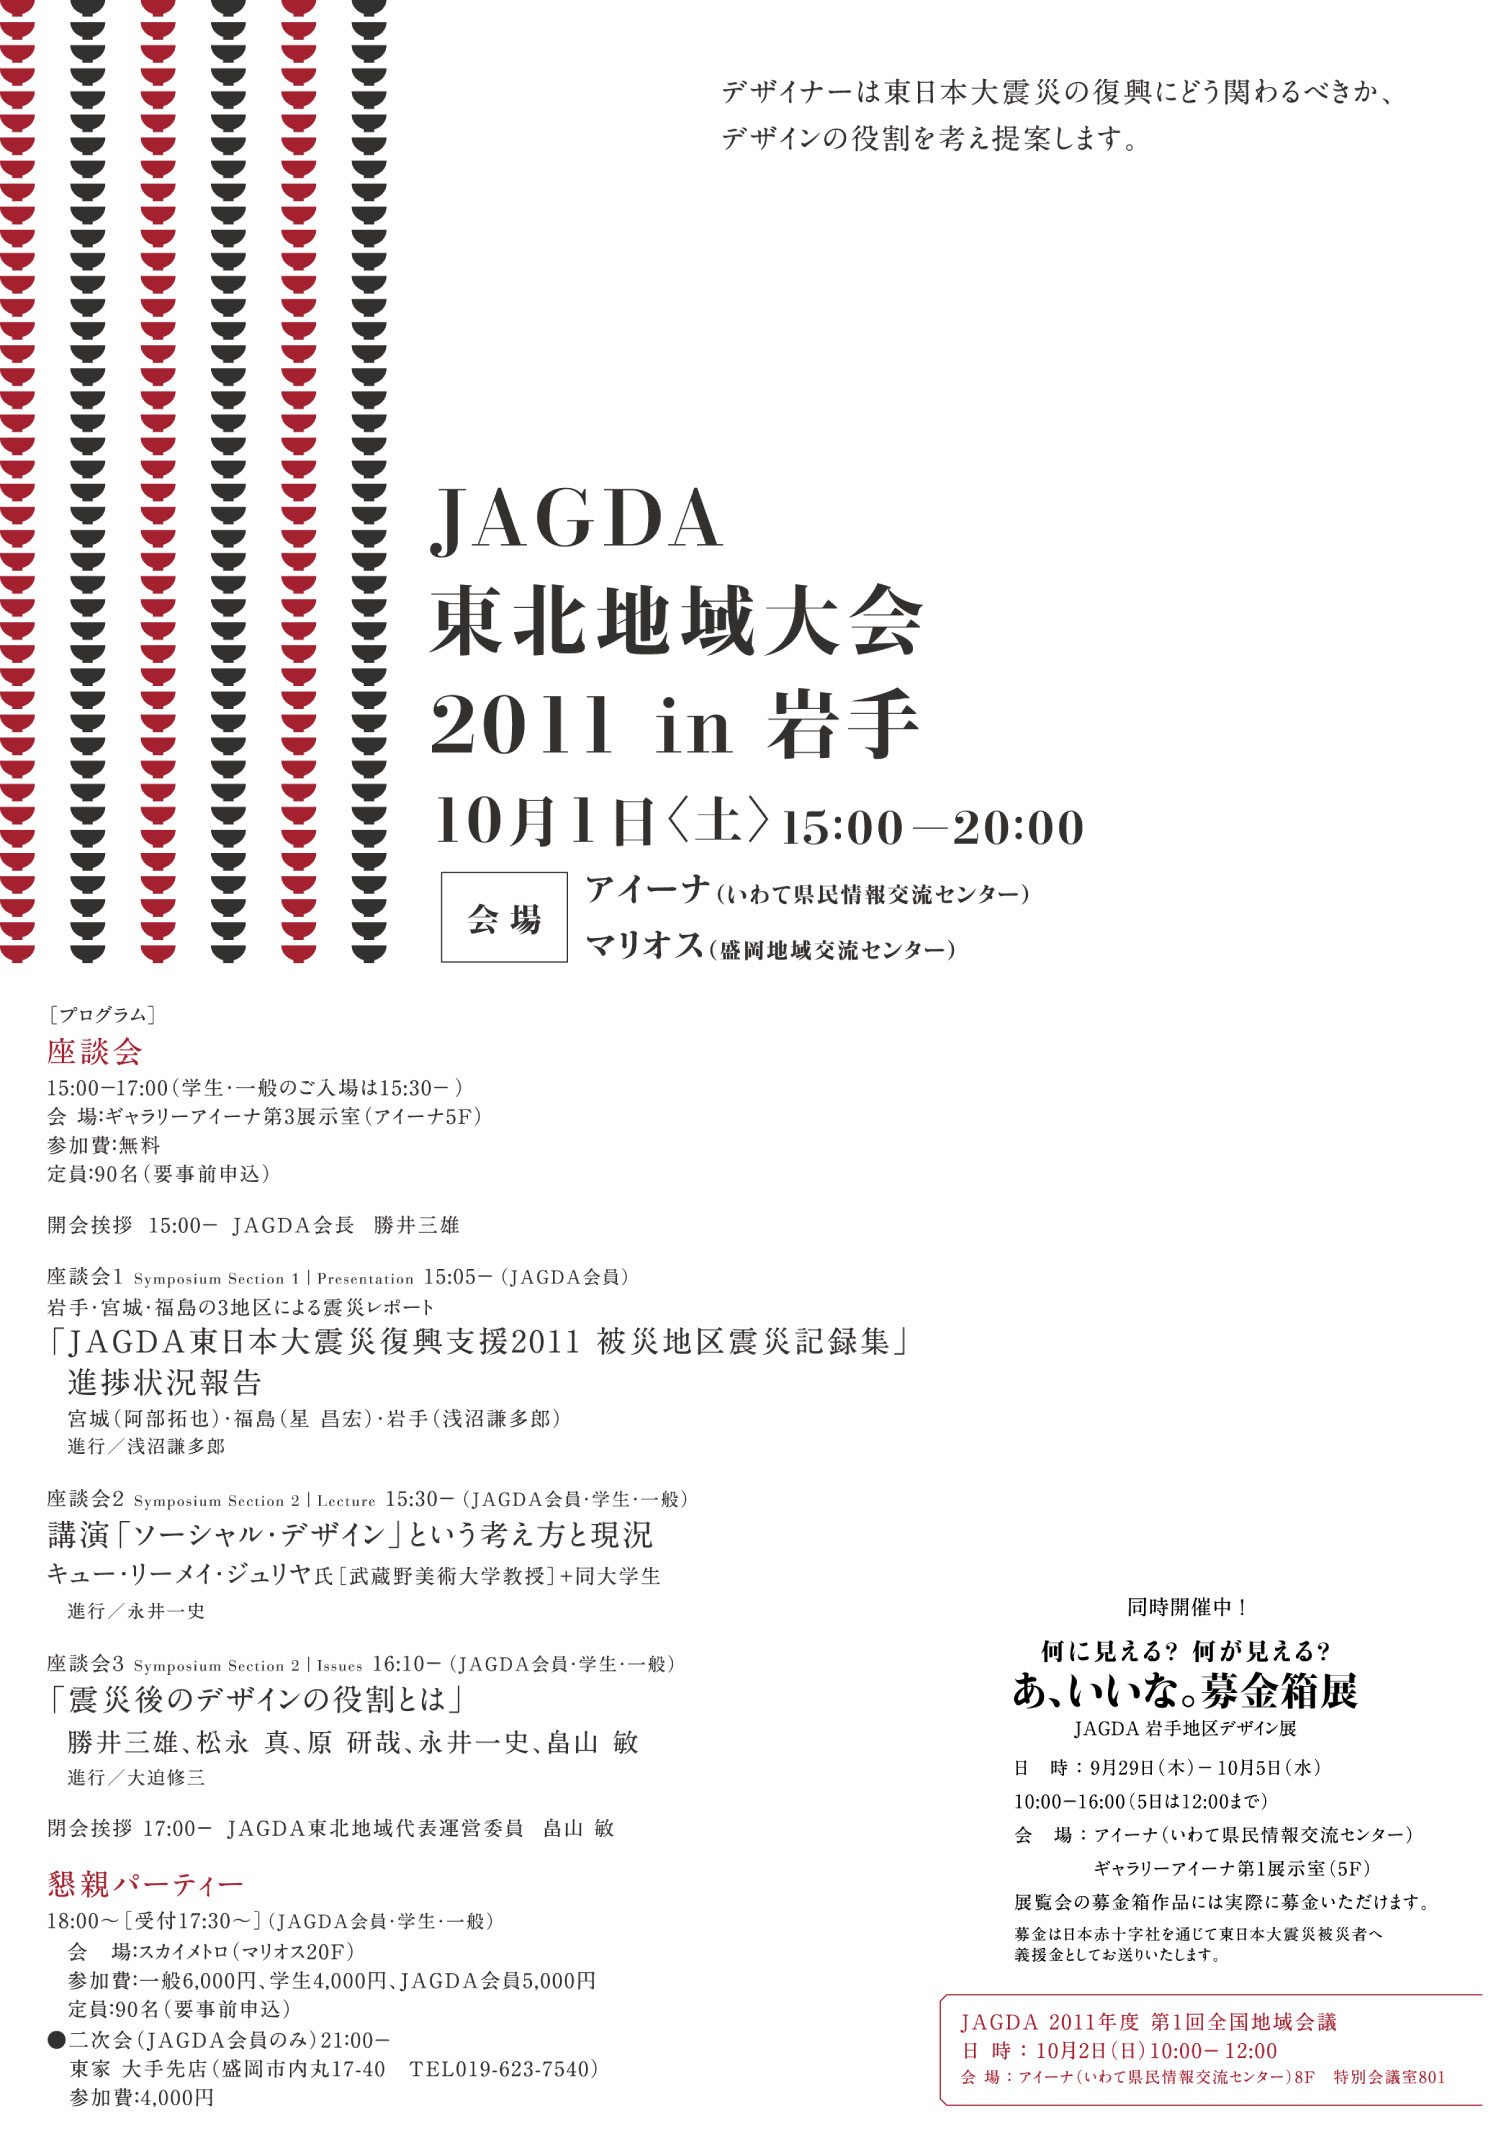 JAGDA JAGDA Tohoku 2011 Flyer